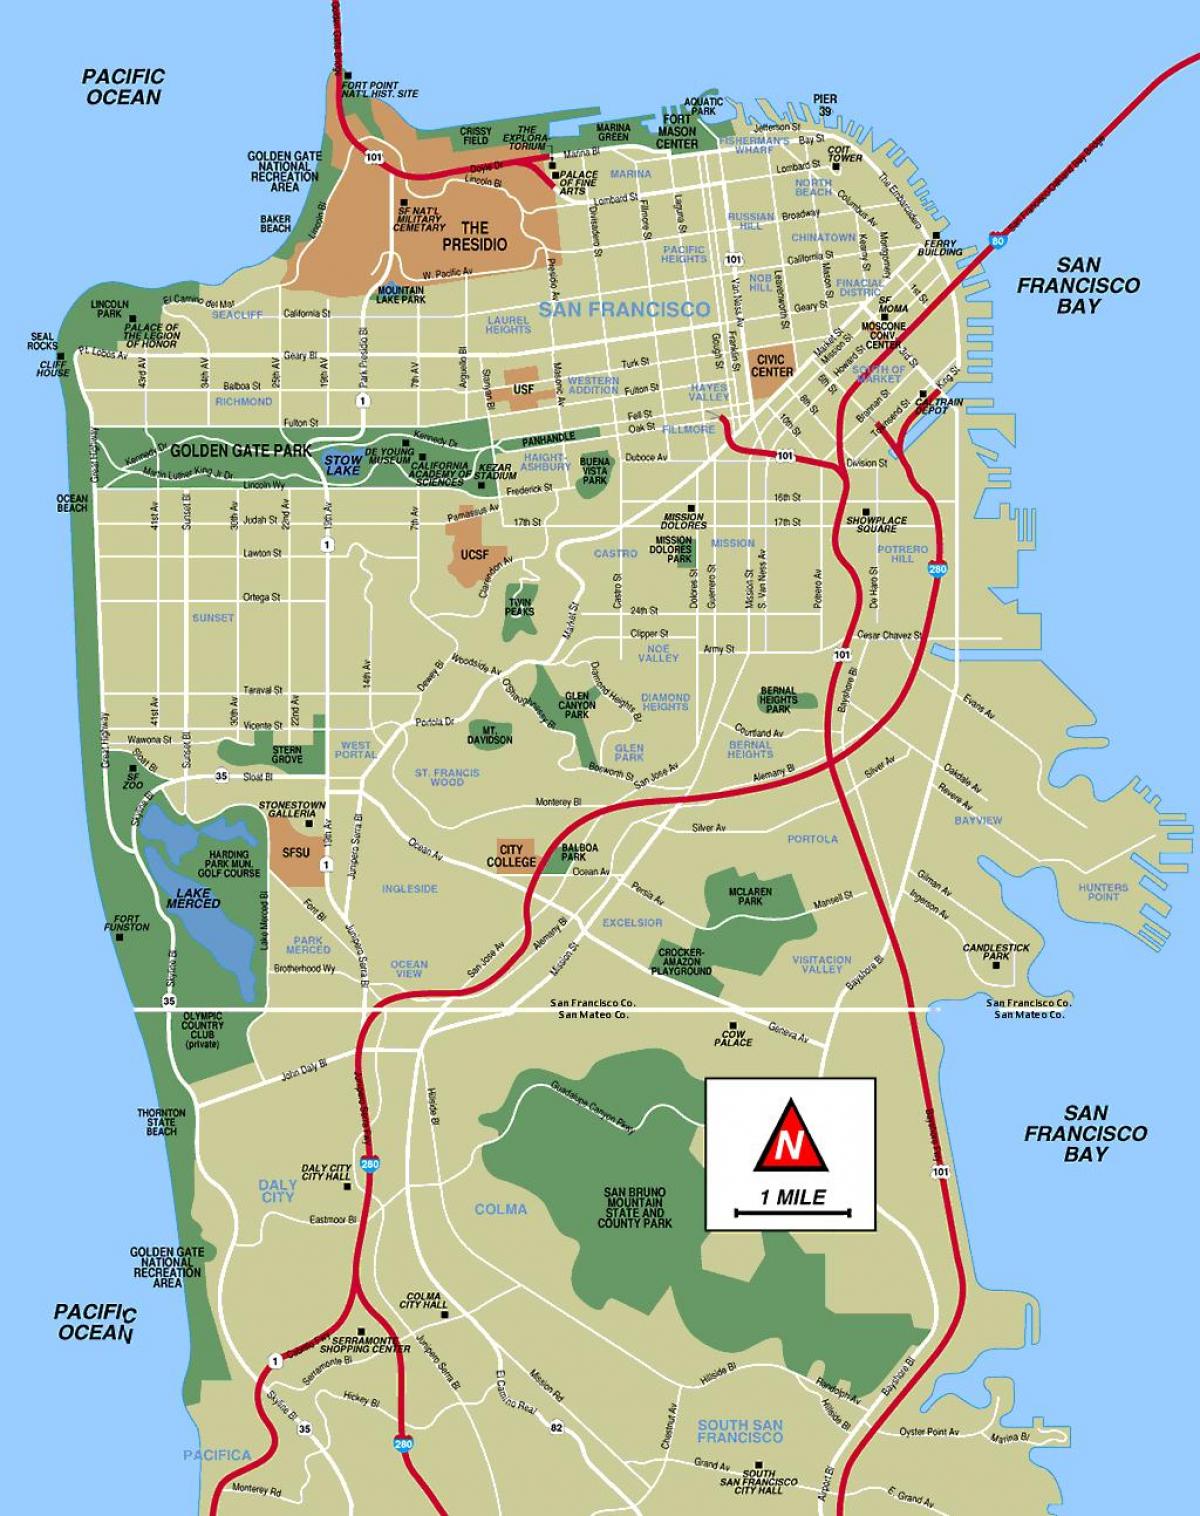 Քարտեզը Սան Ֆրանցիսկոյում օֆլայն